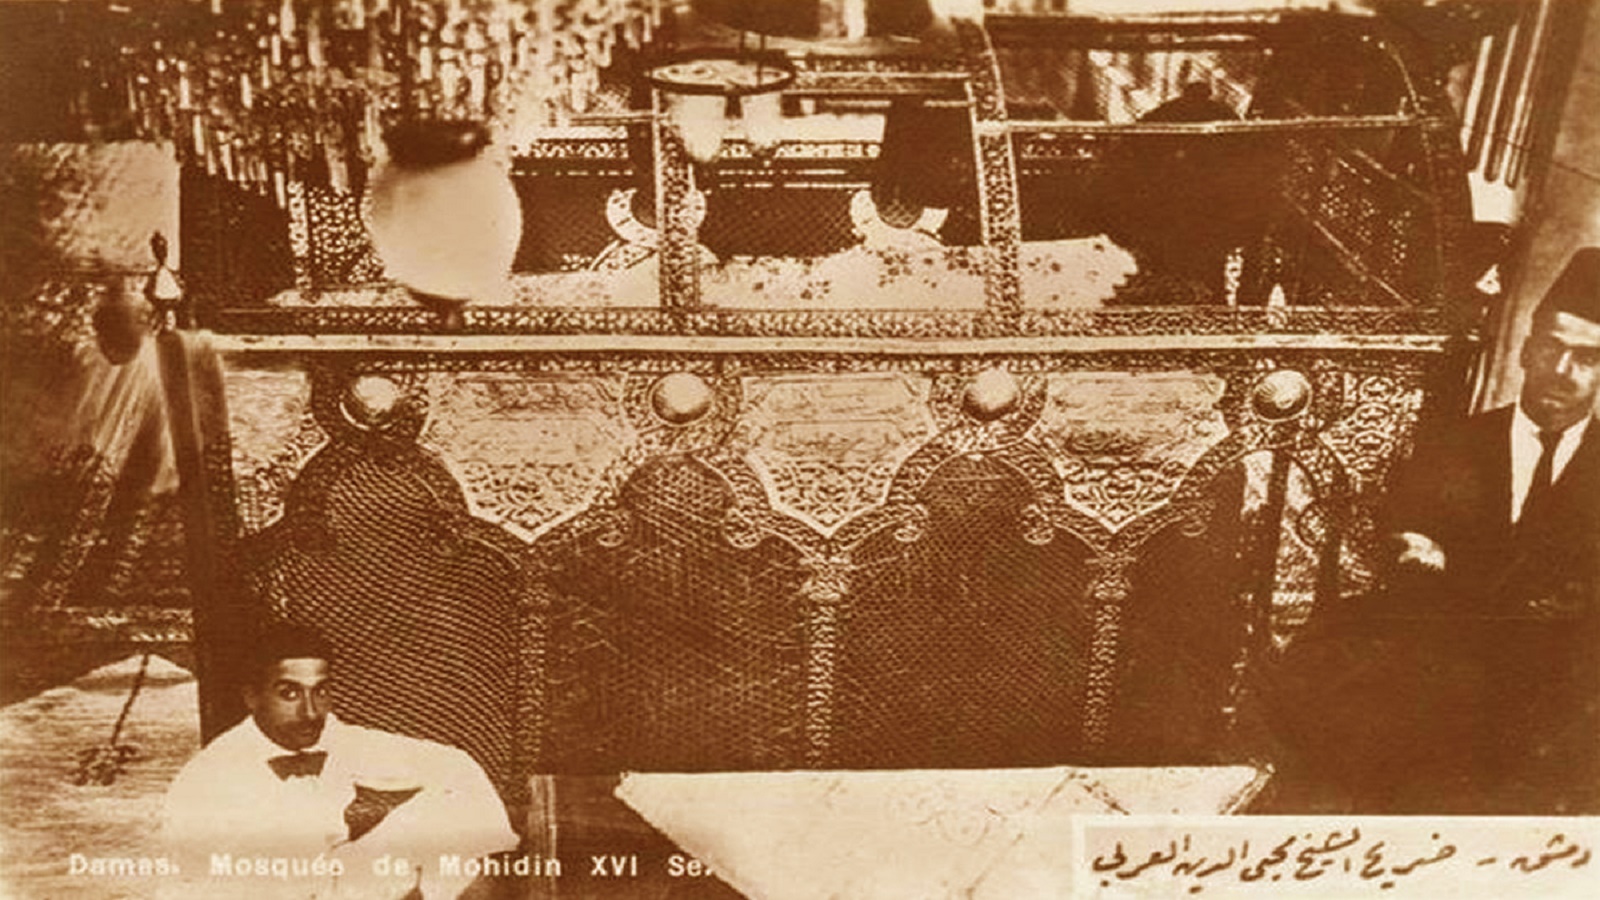 - ضريح الشيخ الأكبر محي الدين بن عربي، صورة من عام 1940.